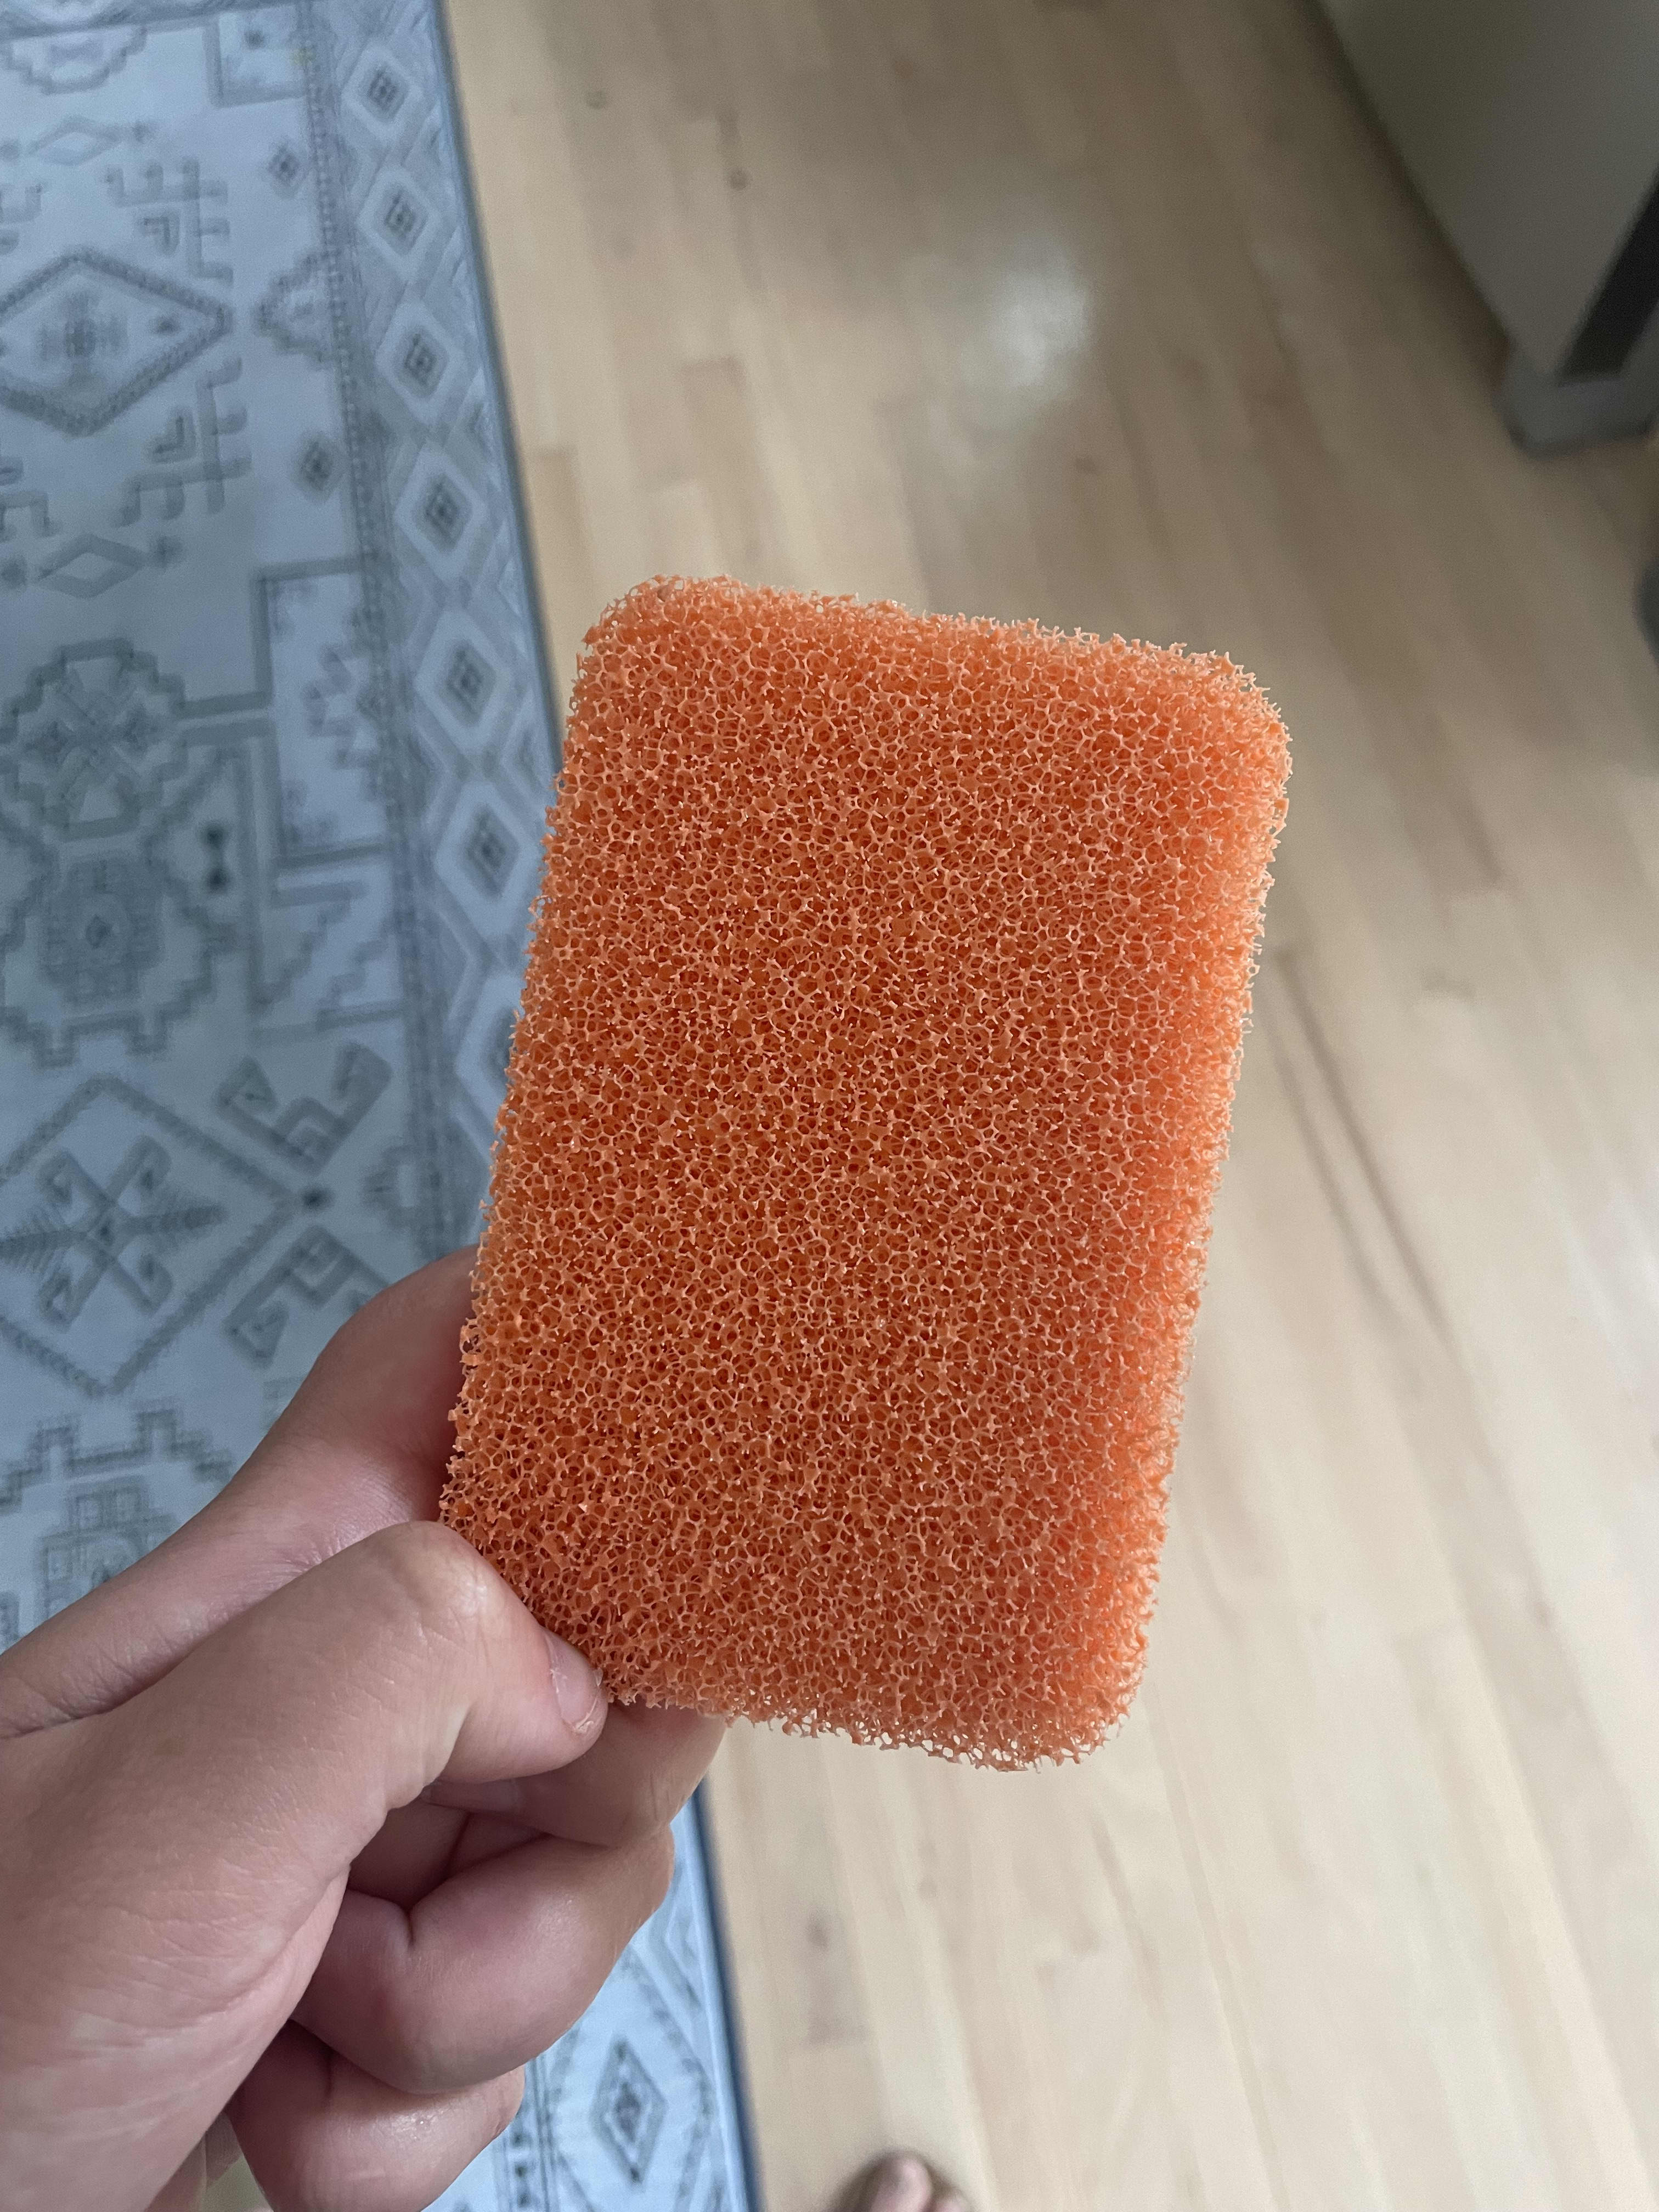 https://cdn.apartmenttherapy.info/image/upload/v1659372687/k/08-2022-peachy-sponge/Peachy_Sponge.jpg